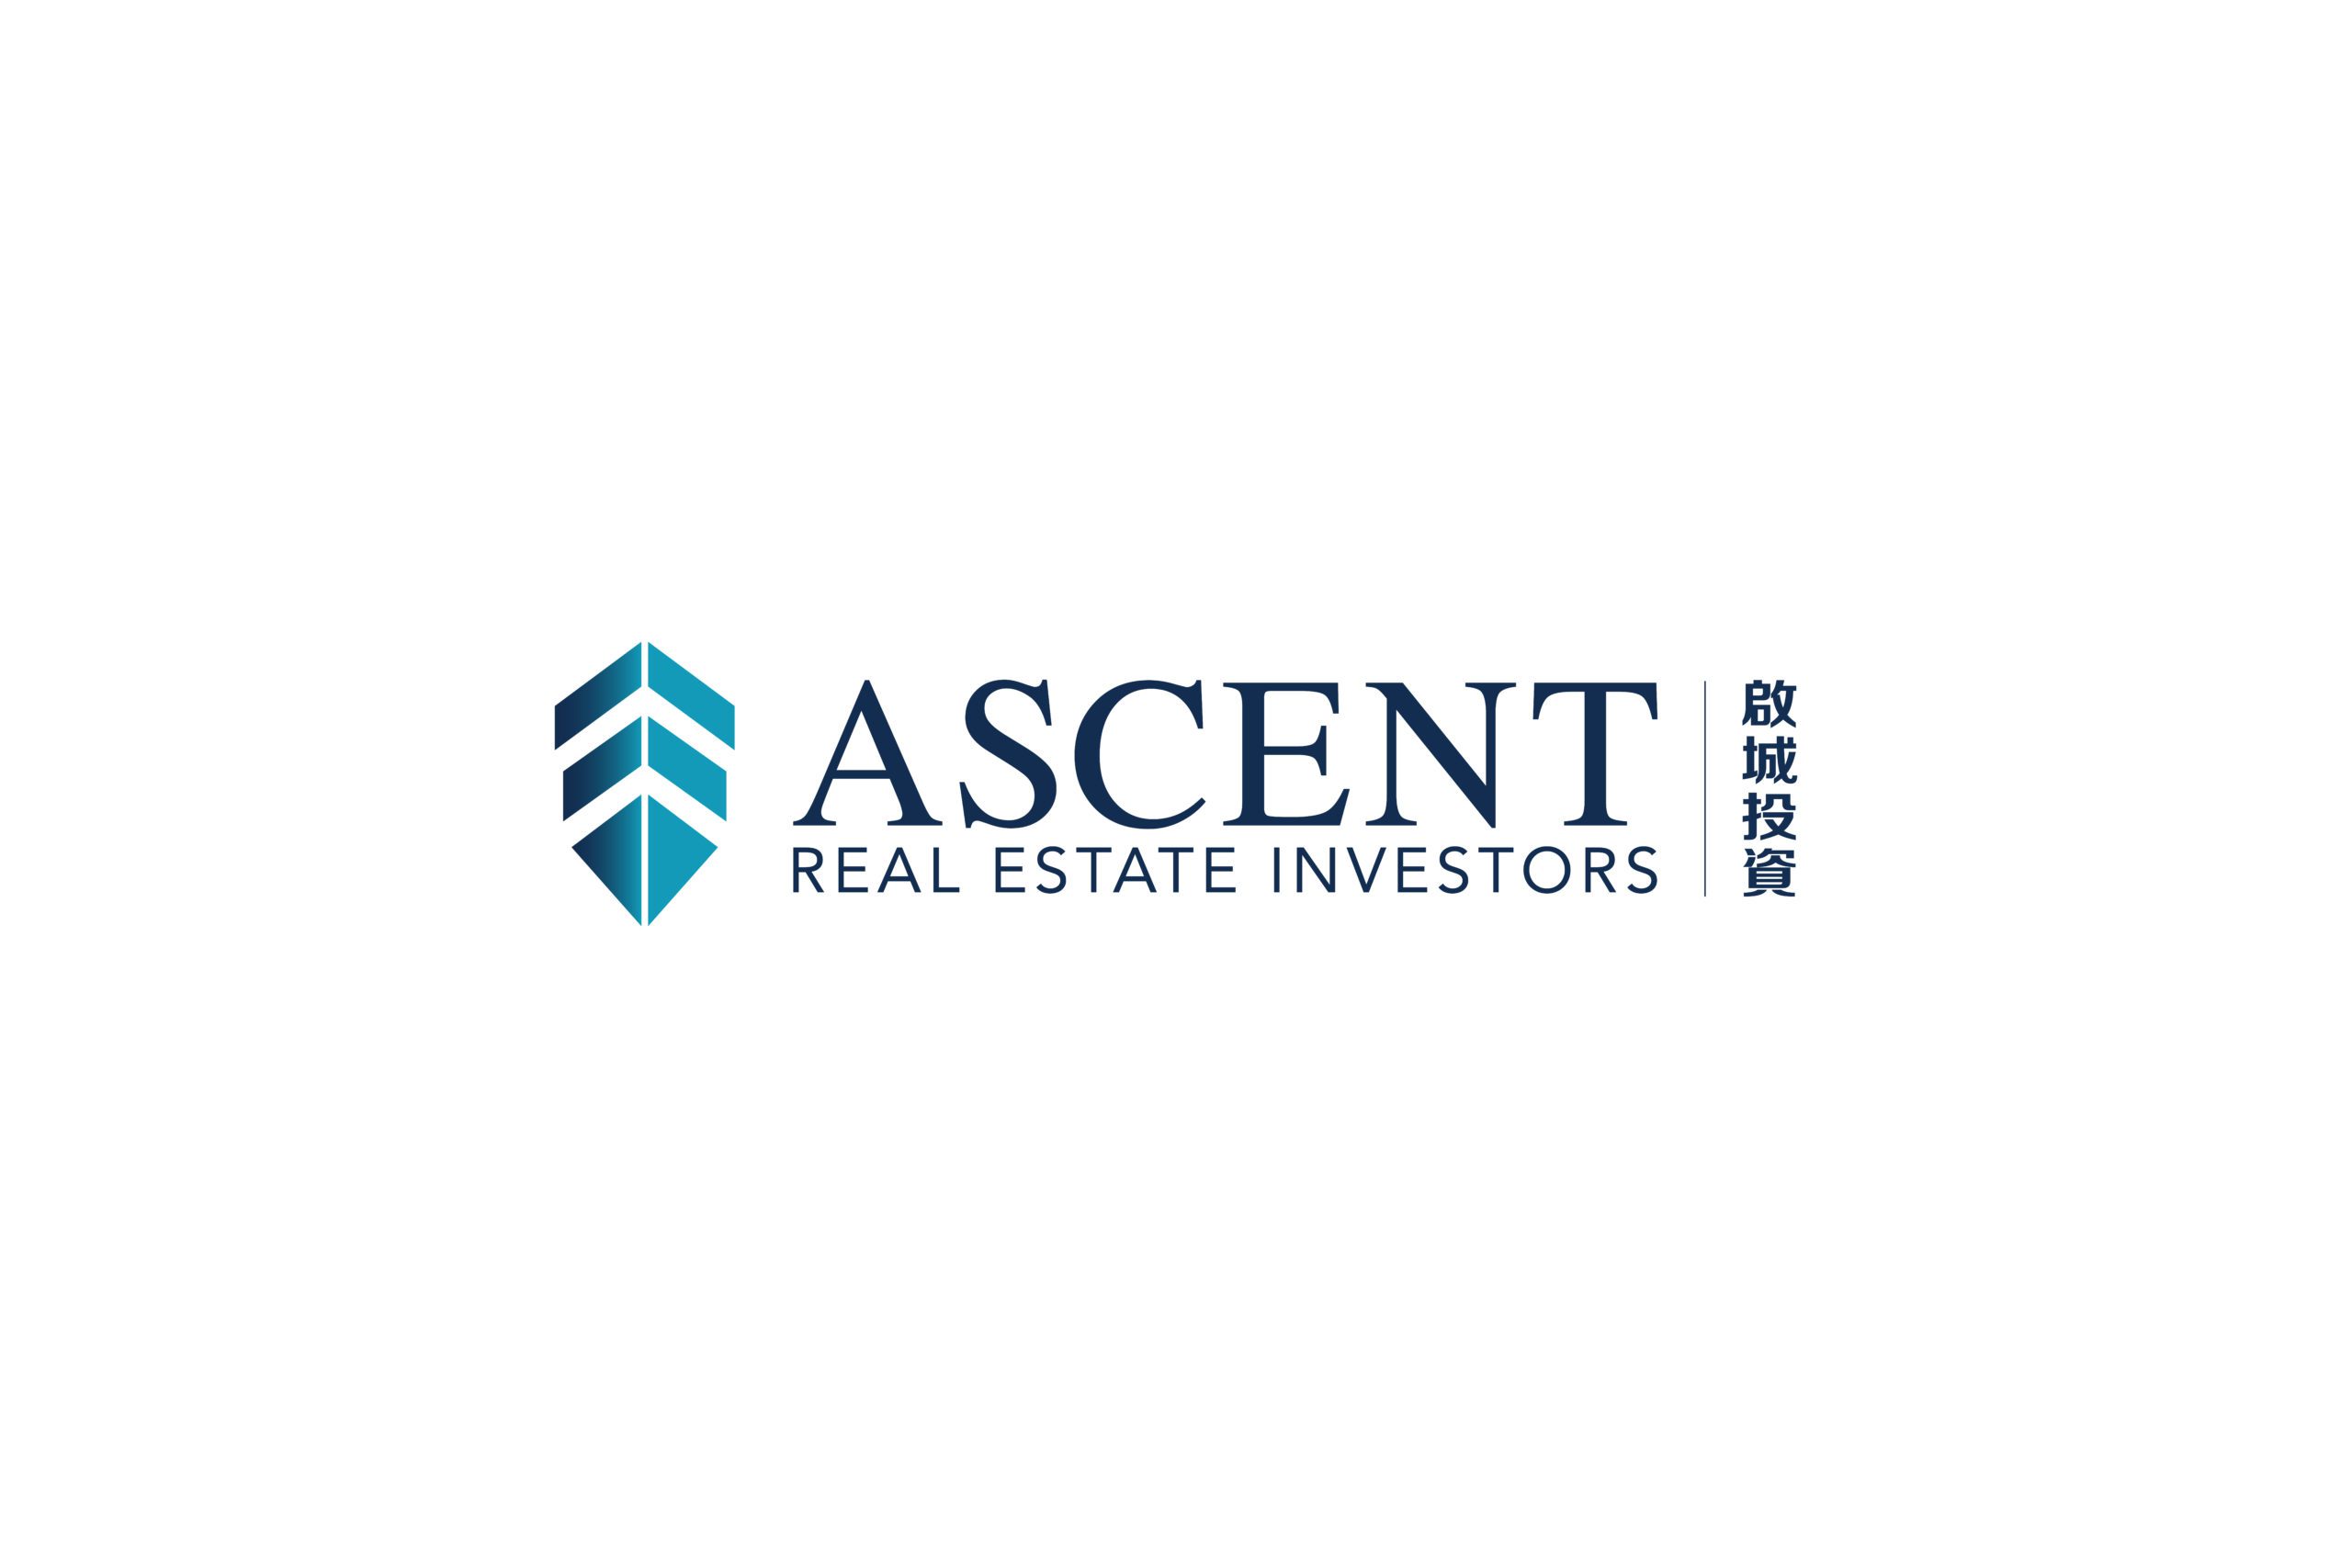 Ascent full logo on white background